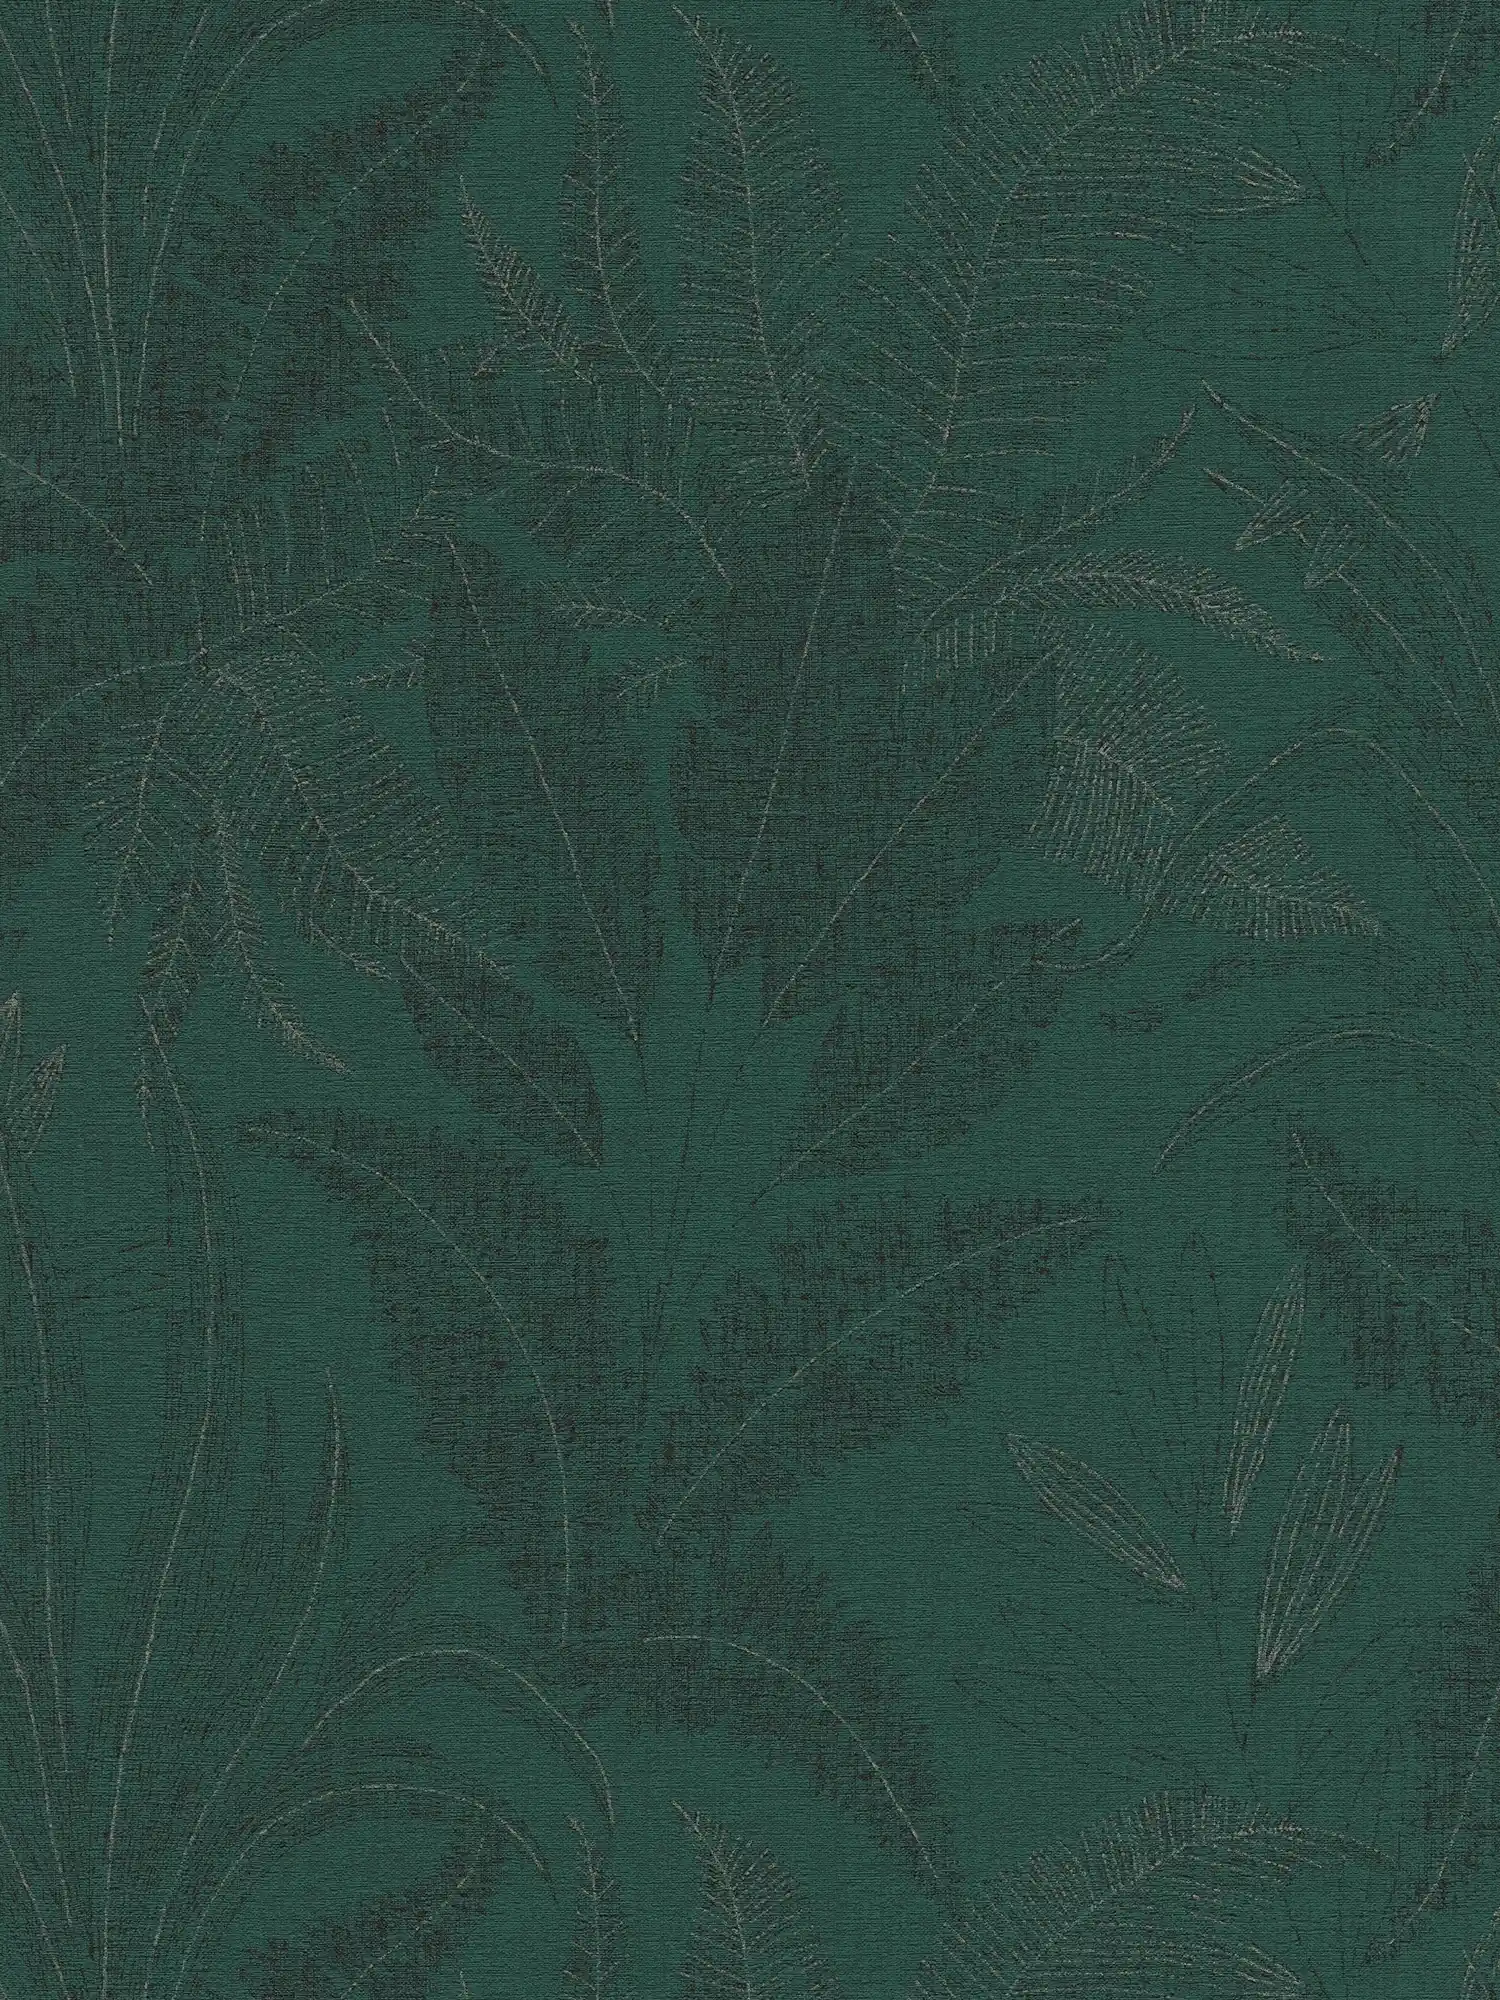 Papel pintado con motivos selváticos ligeramente texturizados - verde, verde oscuro, negro
